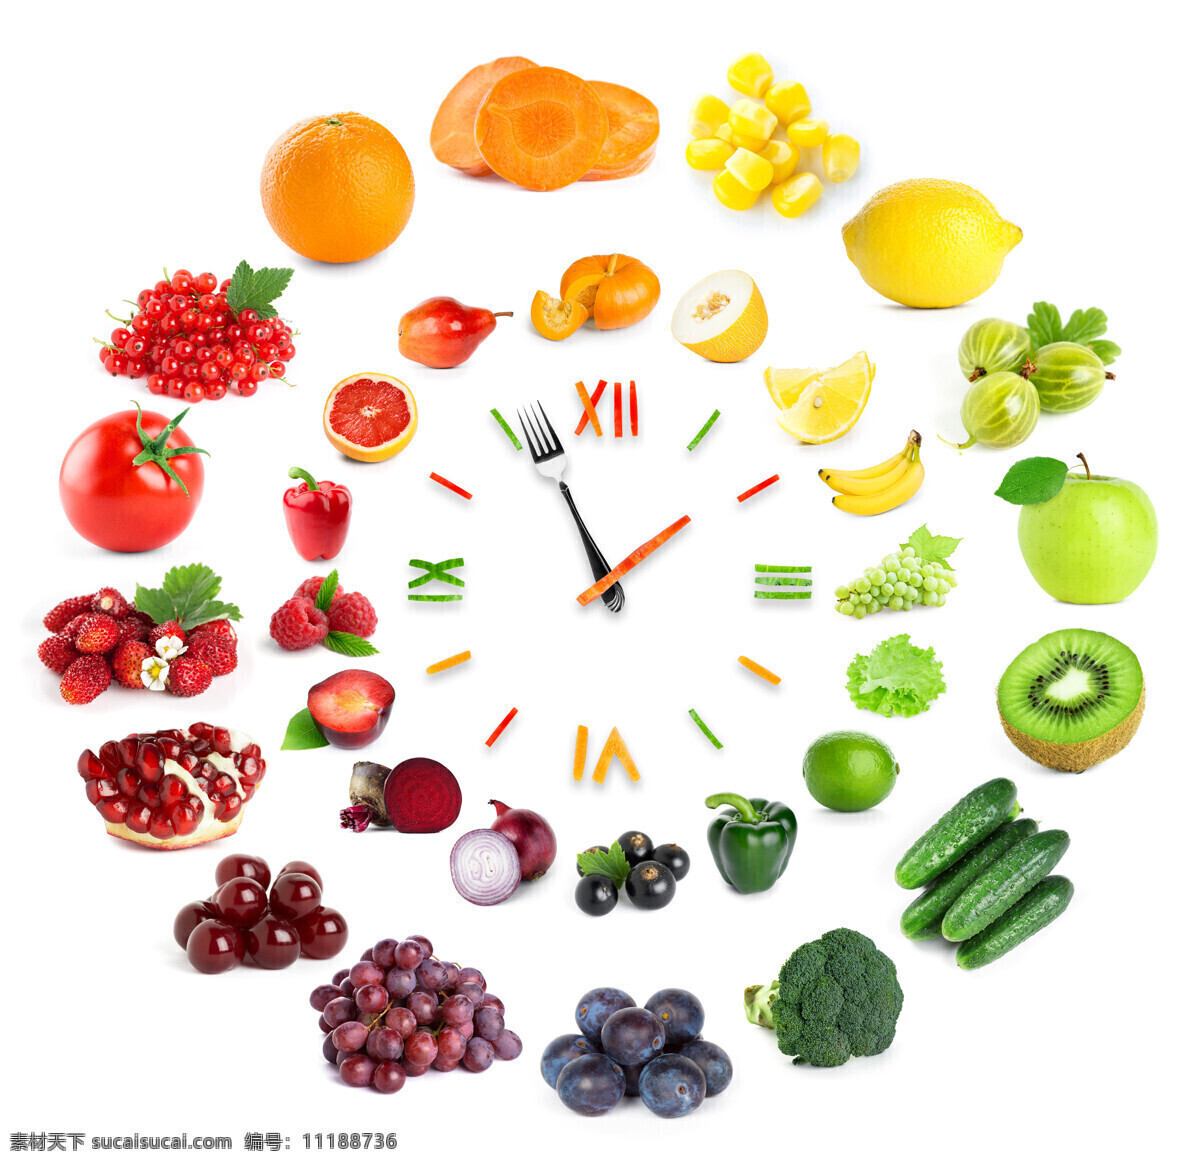 水果时钟 水果 钟表 时钟 创意 时间 水果蔬菜 生活百科 生活素材